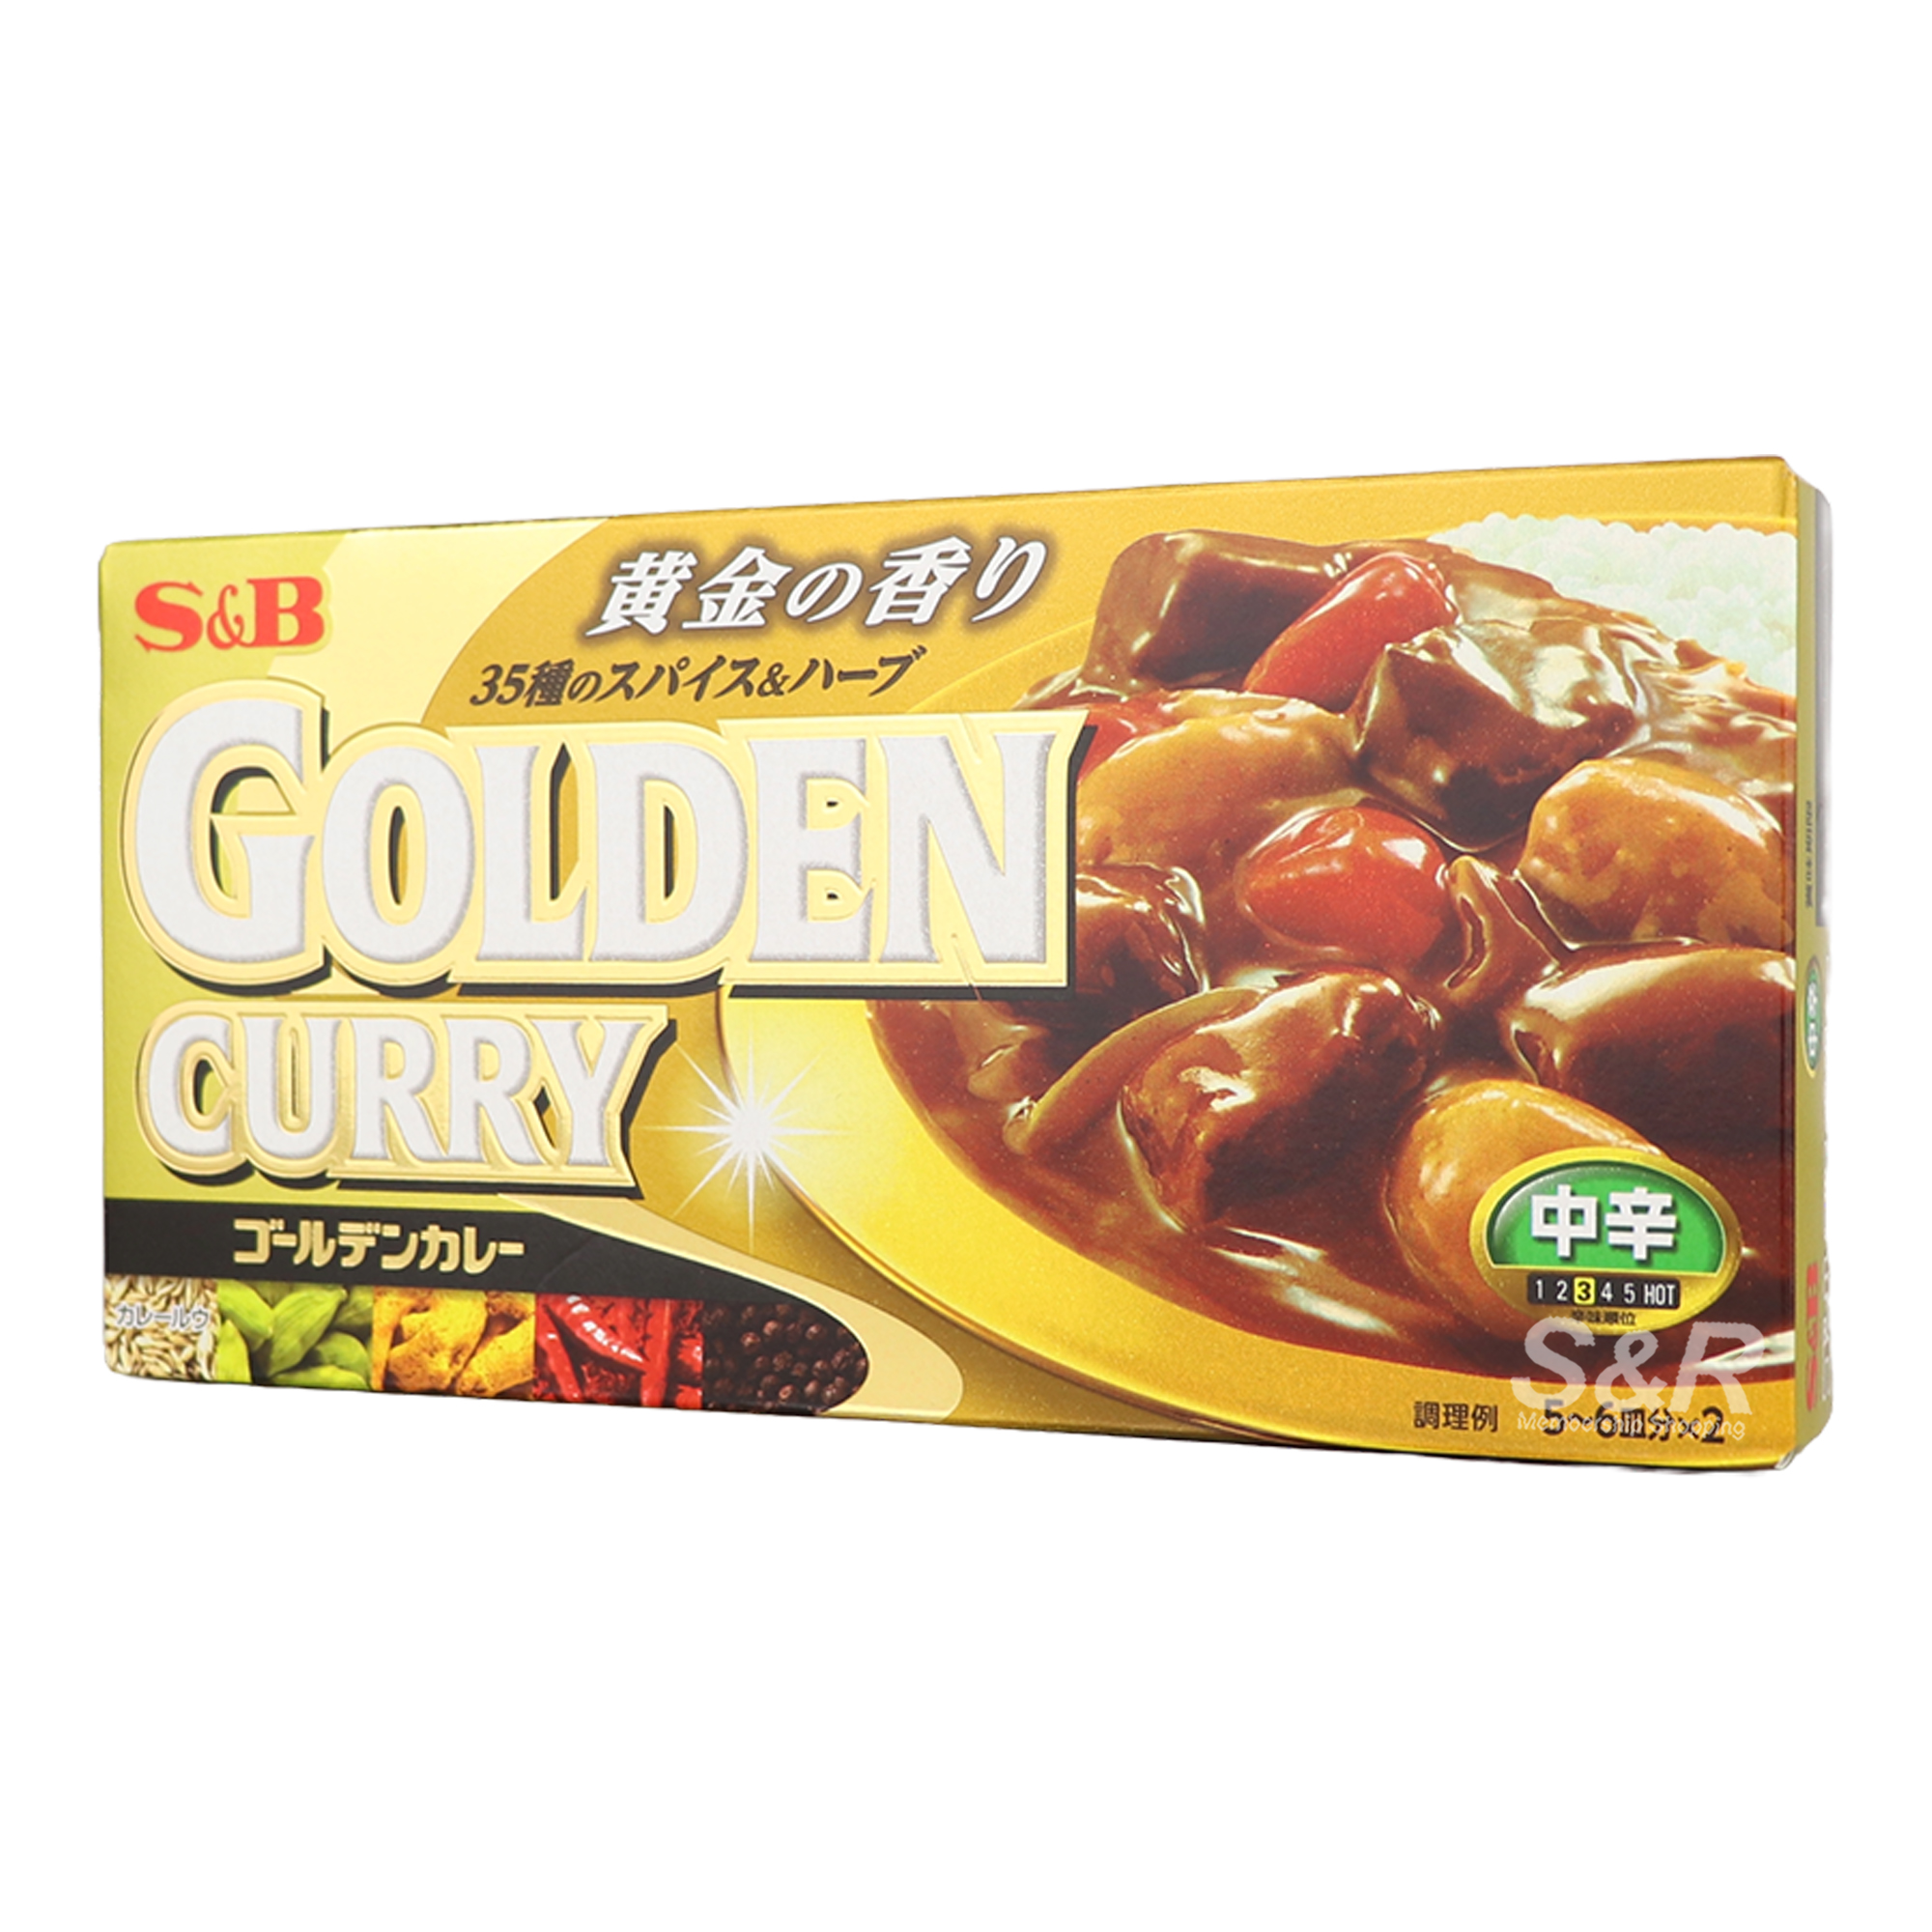 S&B Golden Curry 198g